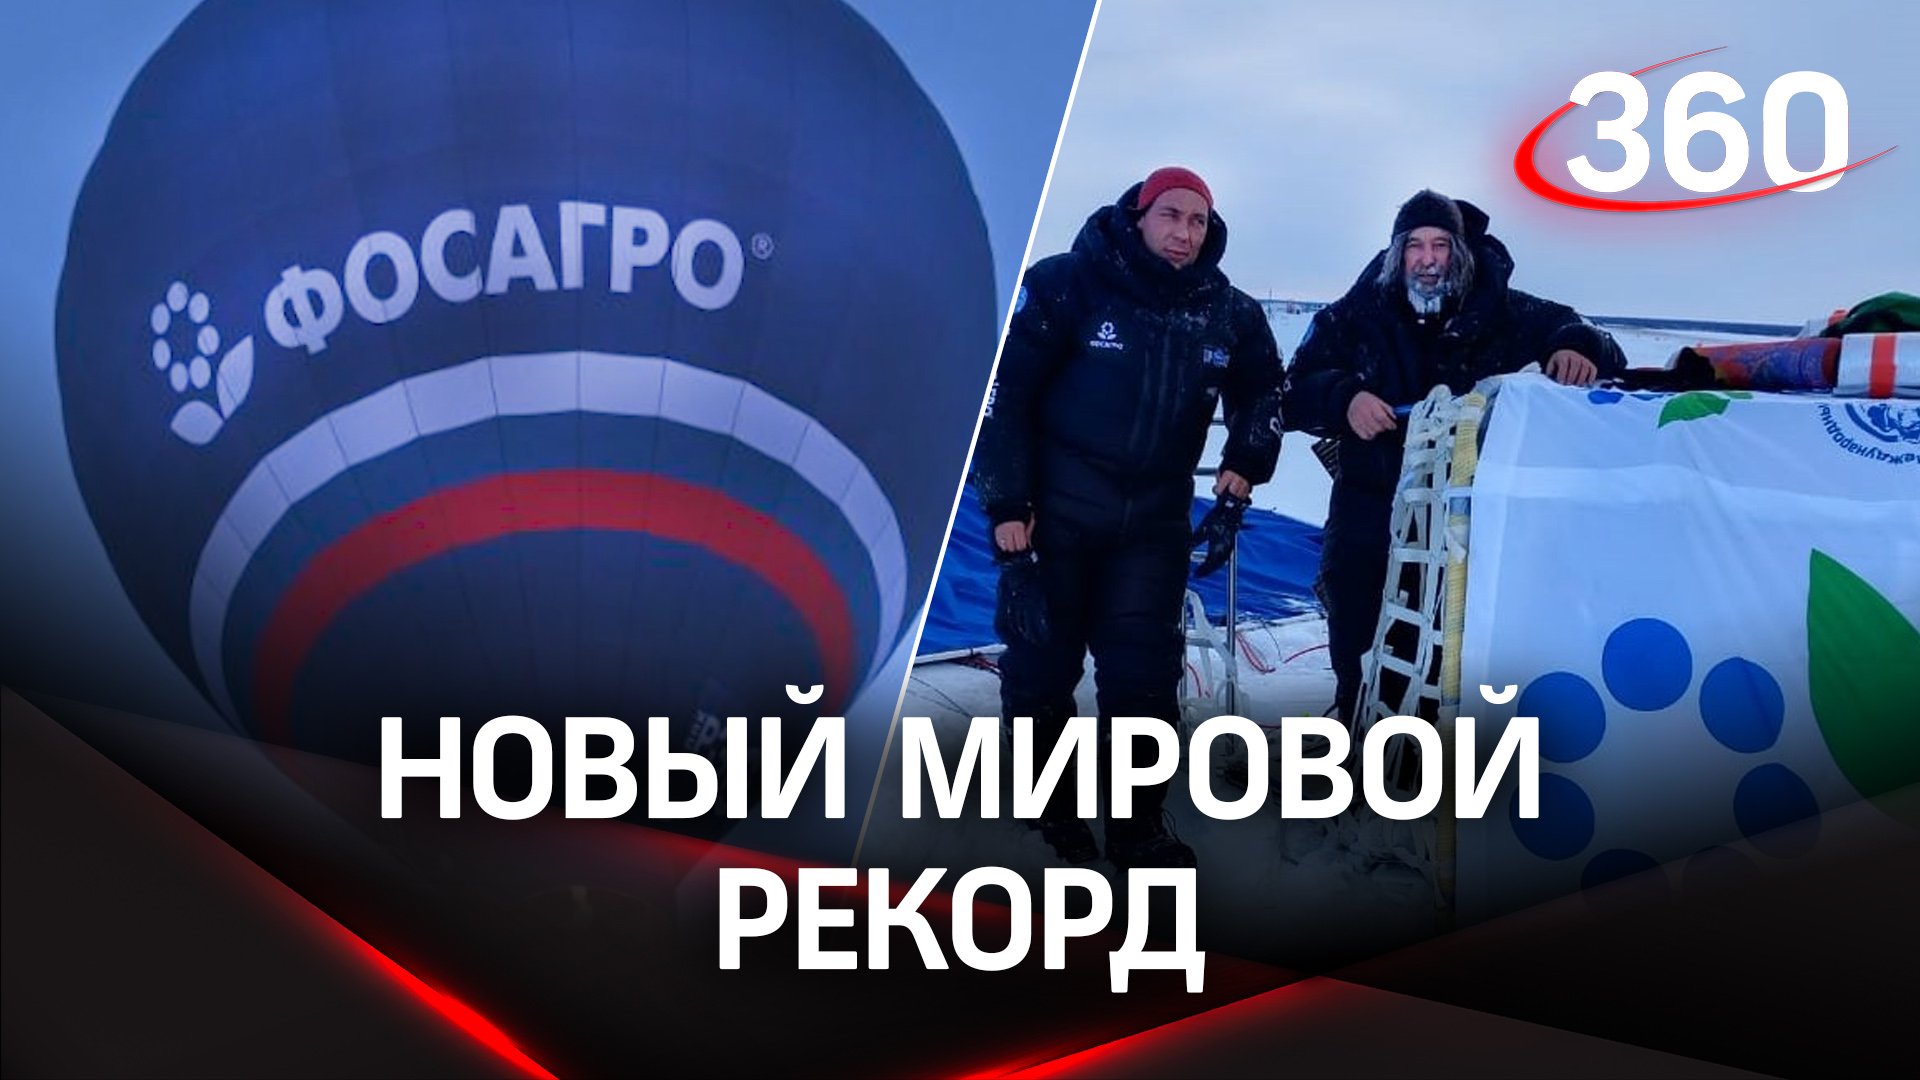 Путешественник Фёдор Конюхов завершил рекордный полёт на воздушном шаре